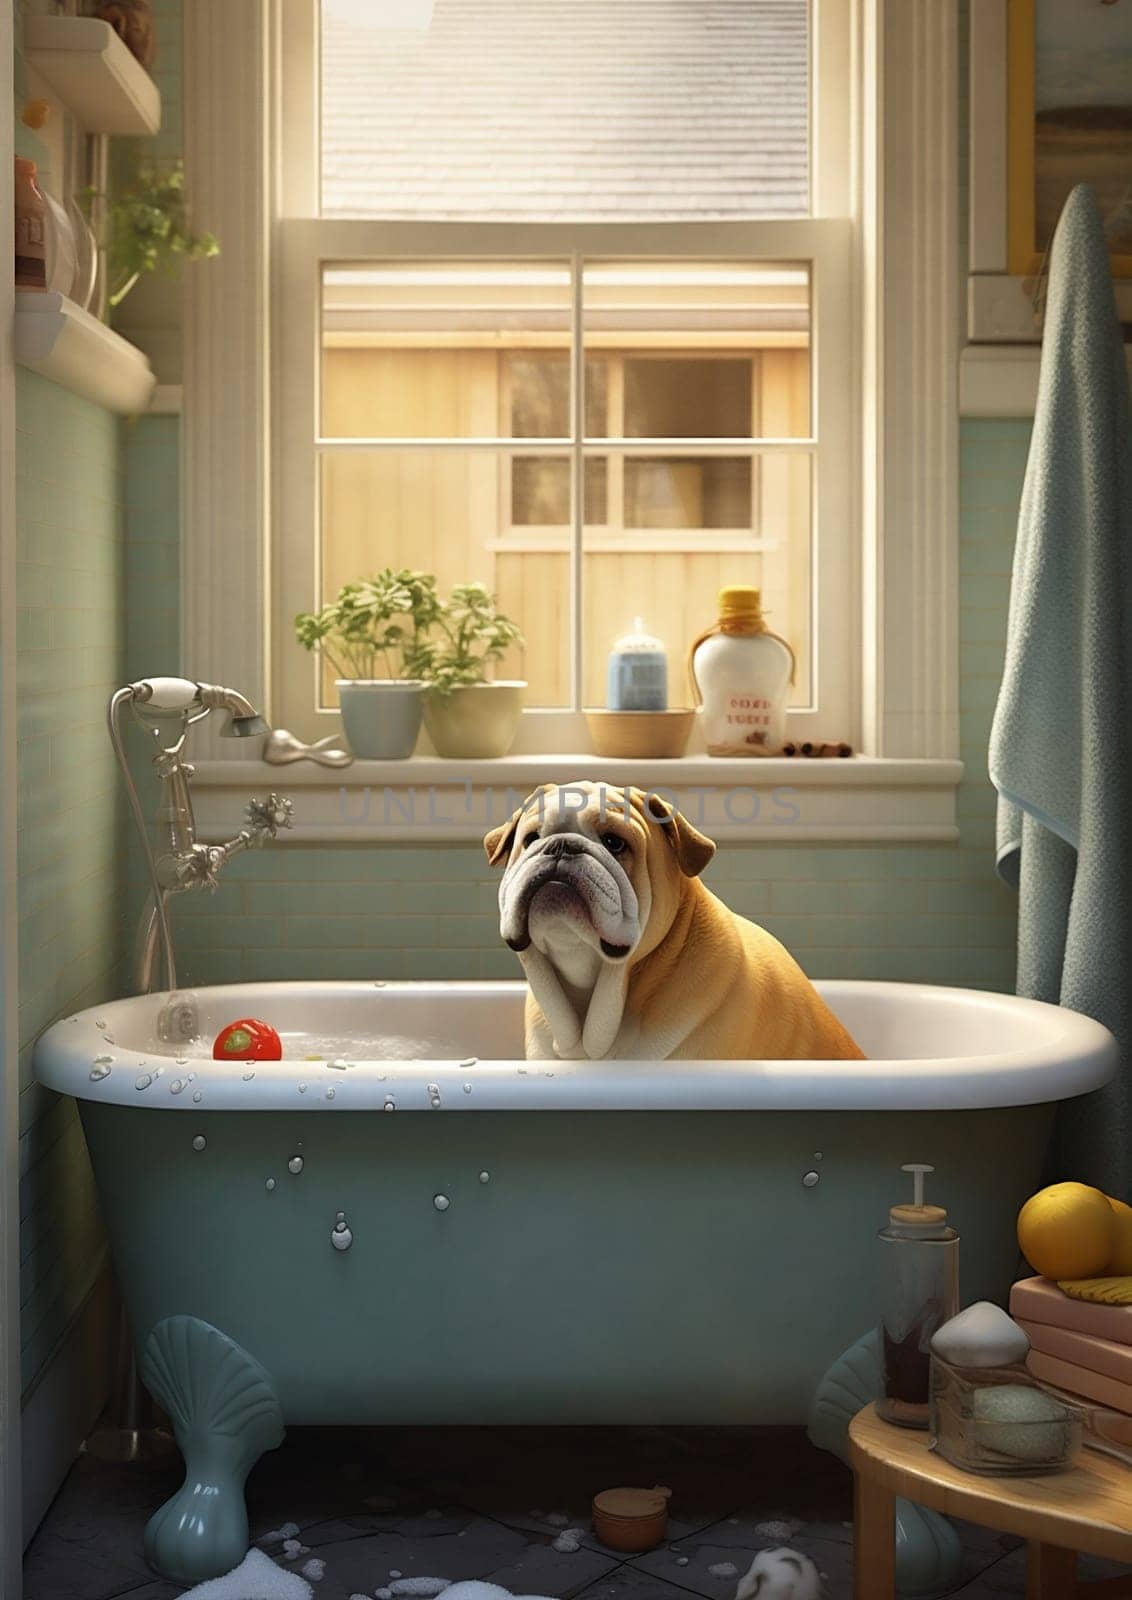 Dog care wash soap towel clean bathroom water bathtub shower shampoo hygiene pet animal wet canine healthy funny cute bath